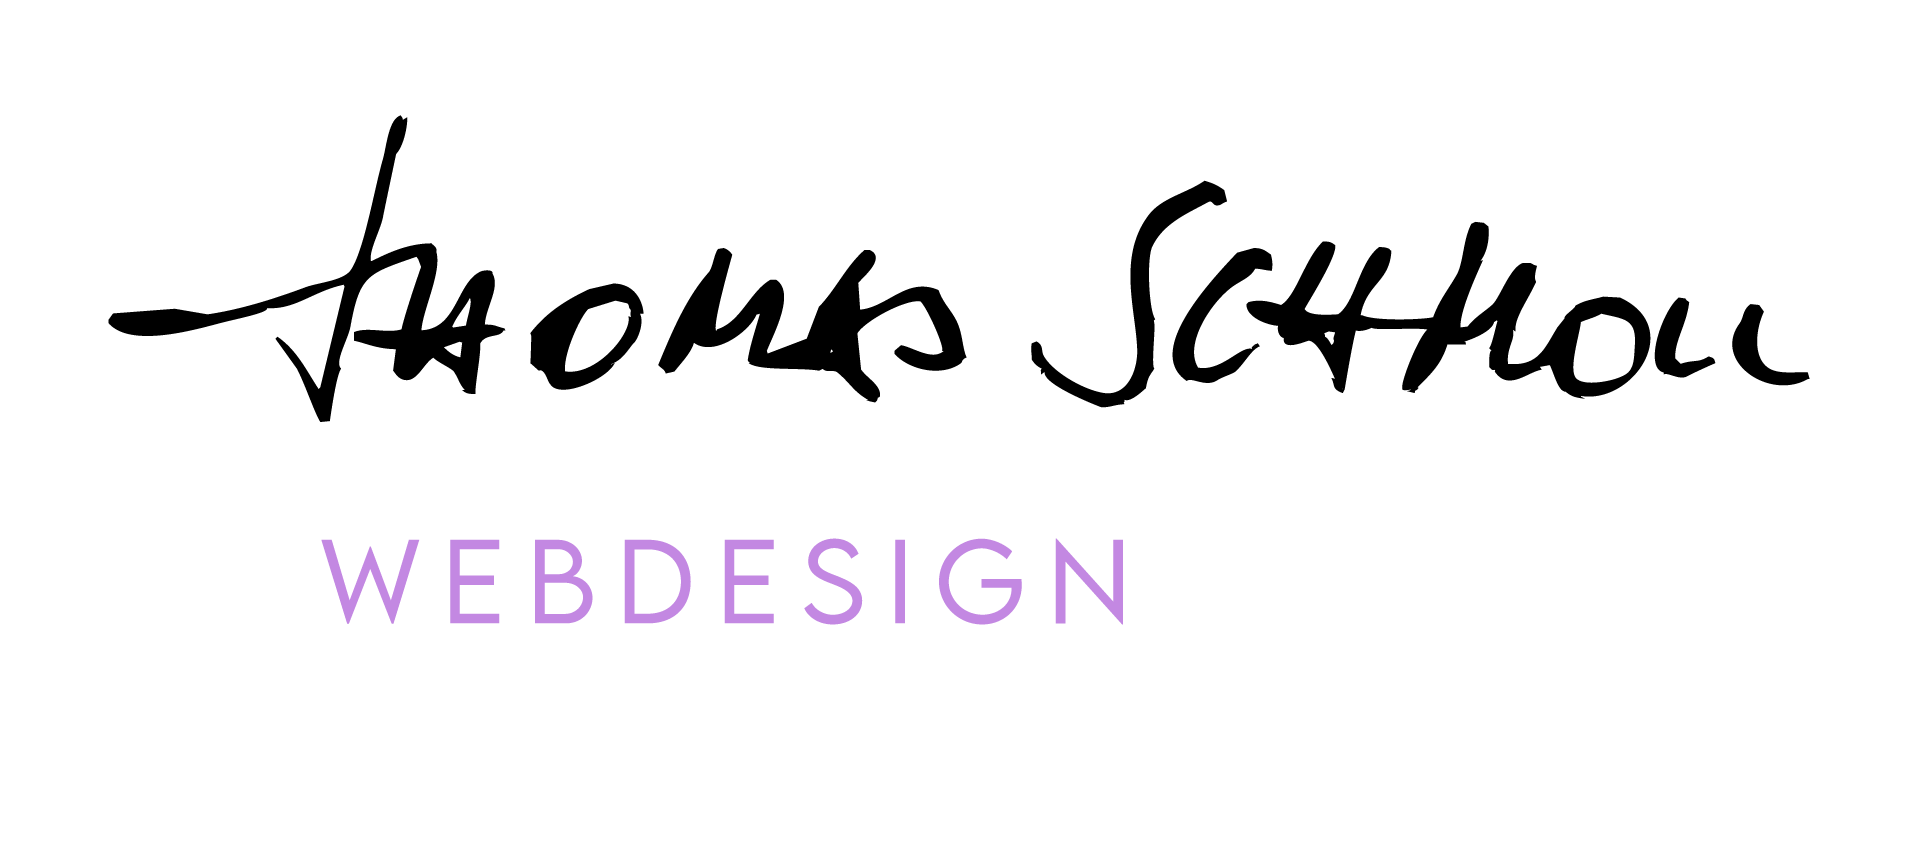 Thomas Schmoll Webdesign